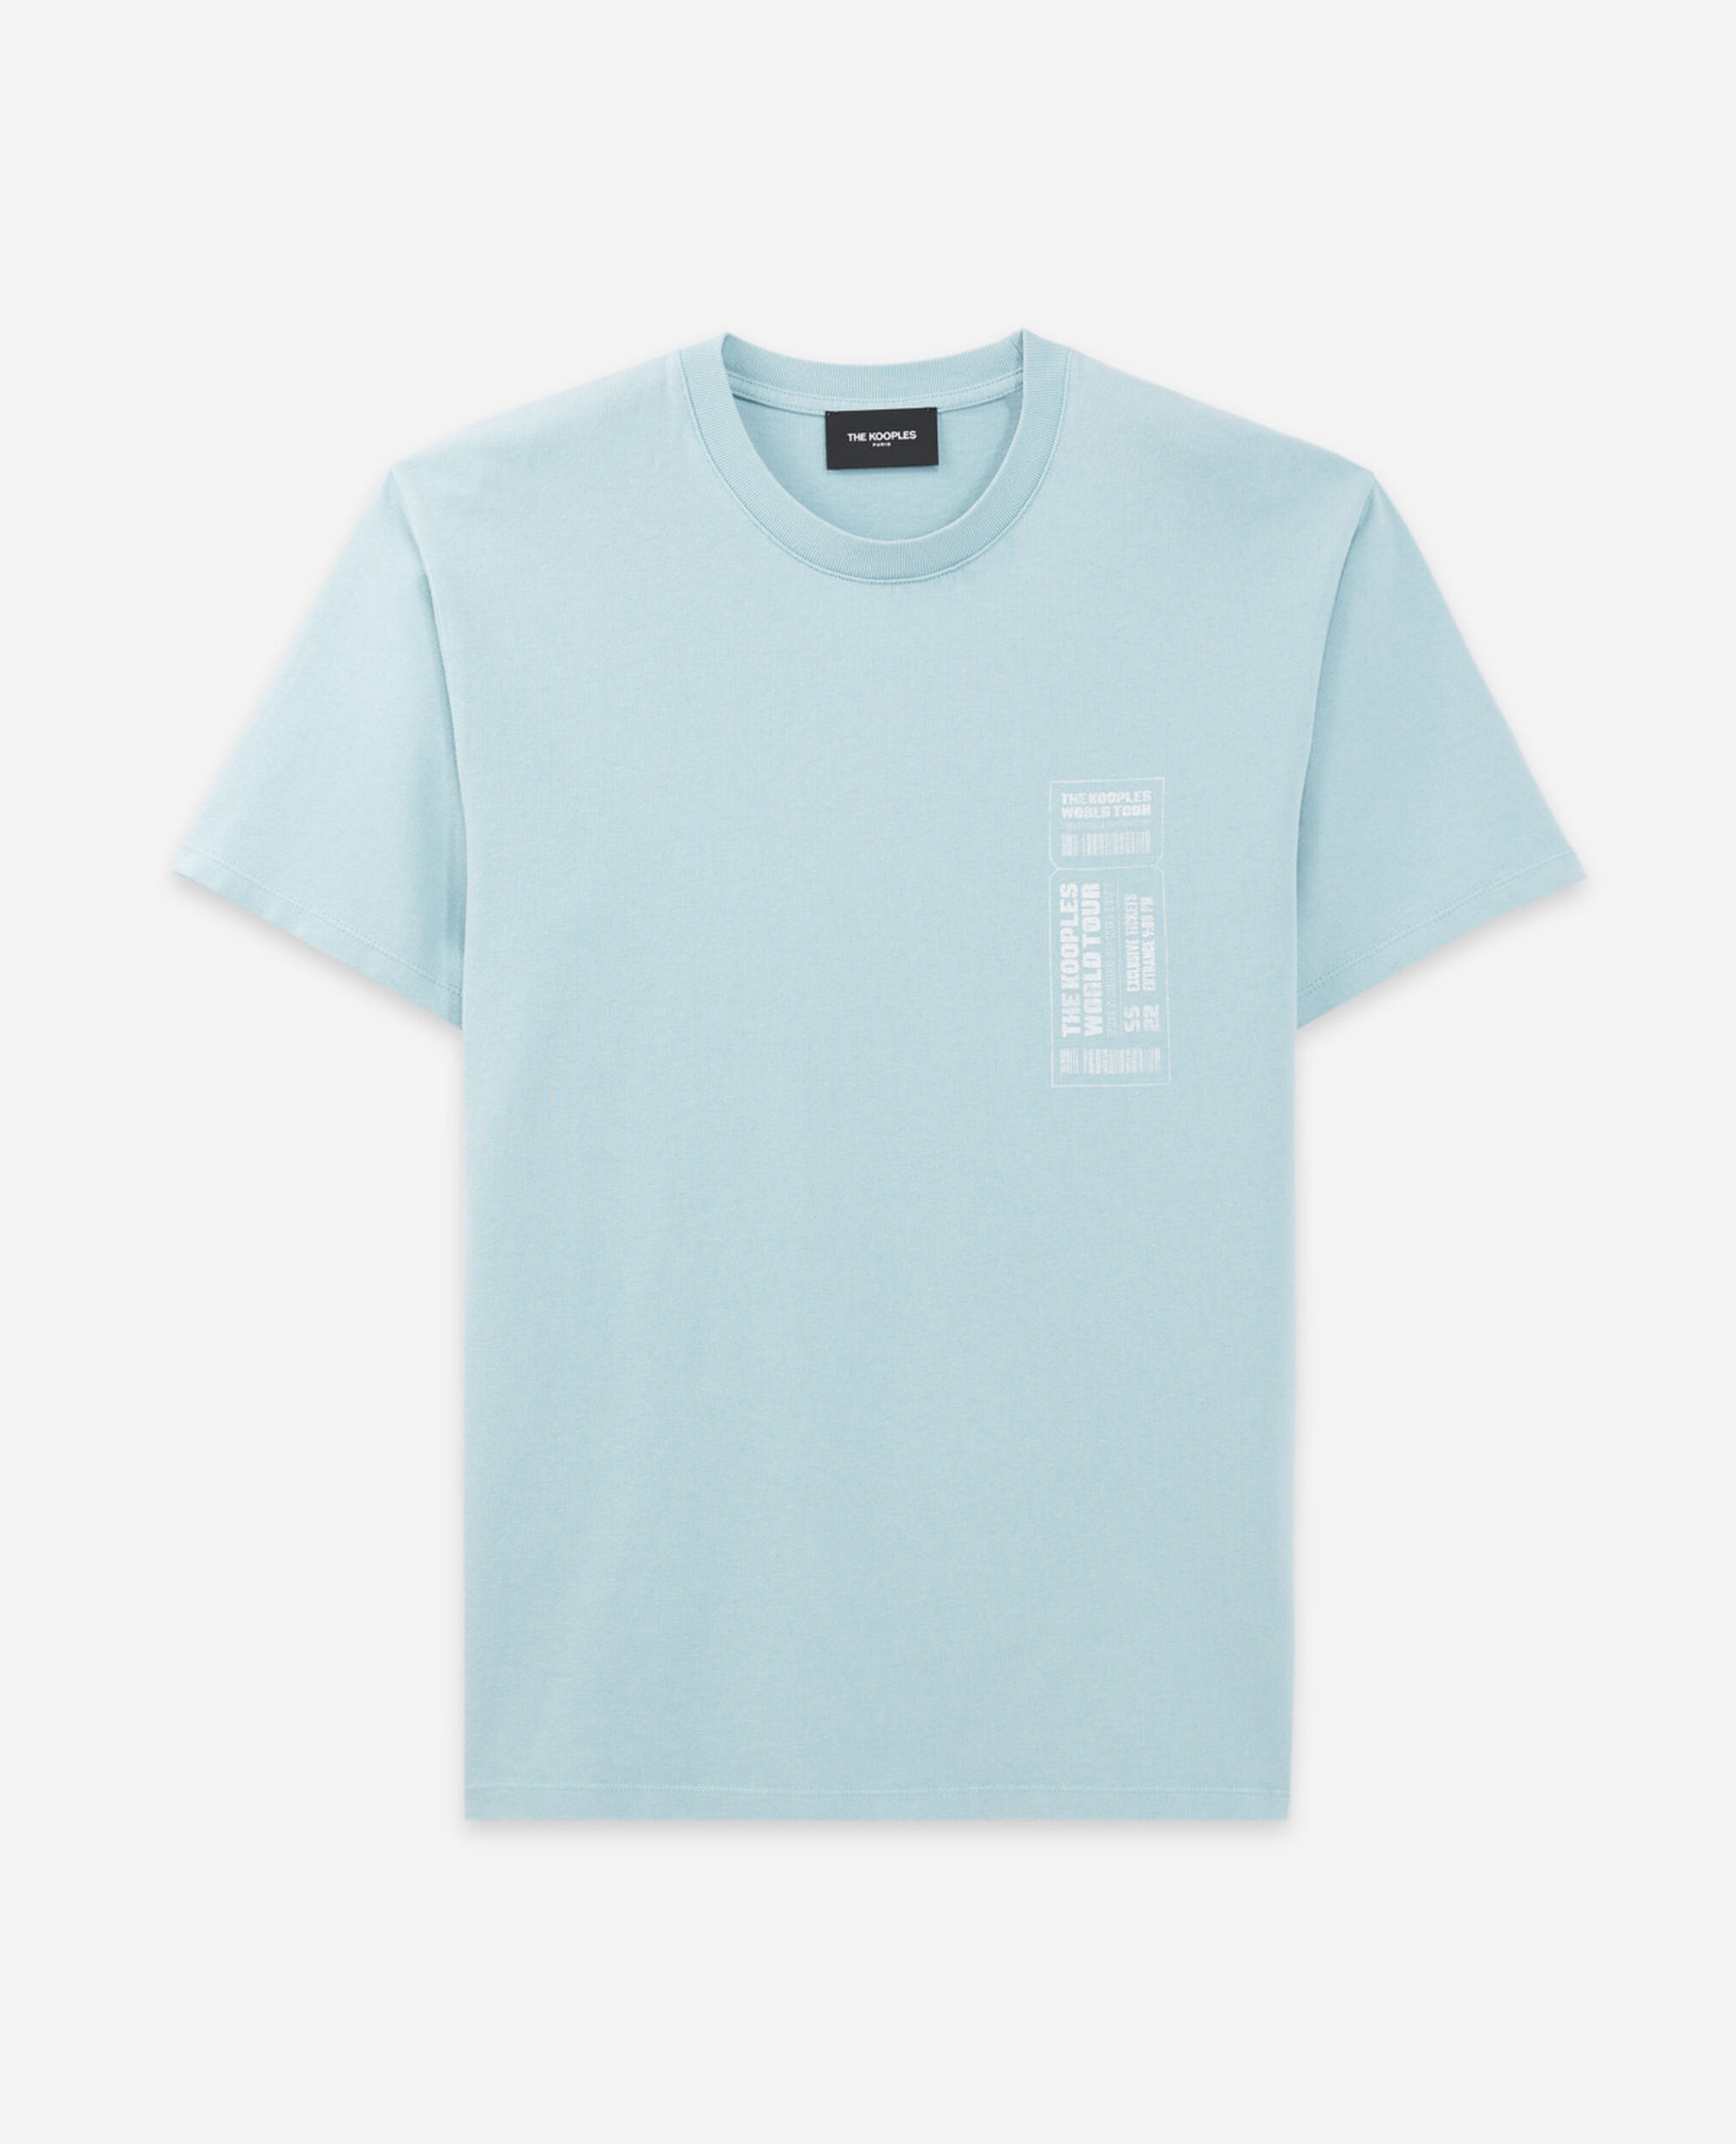 T-Shirt himmelblau Baumwolle Kontrastlogo, BLUE SKY, hi-res image number null